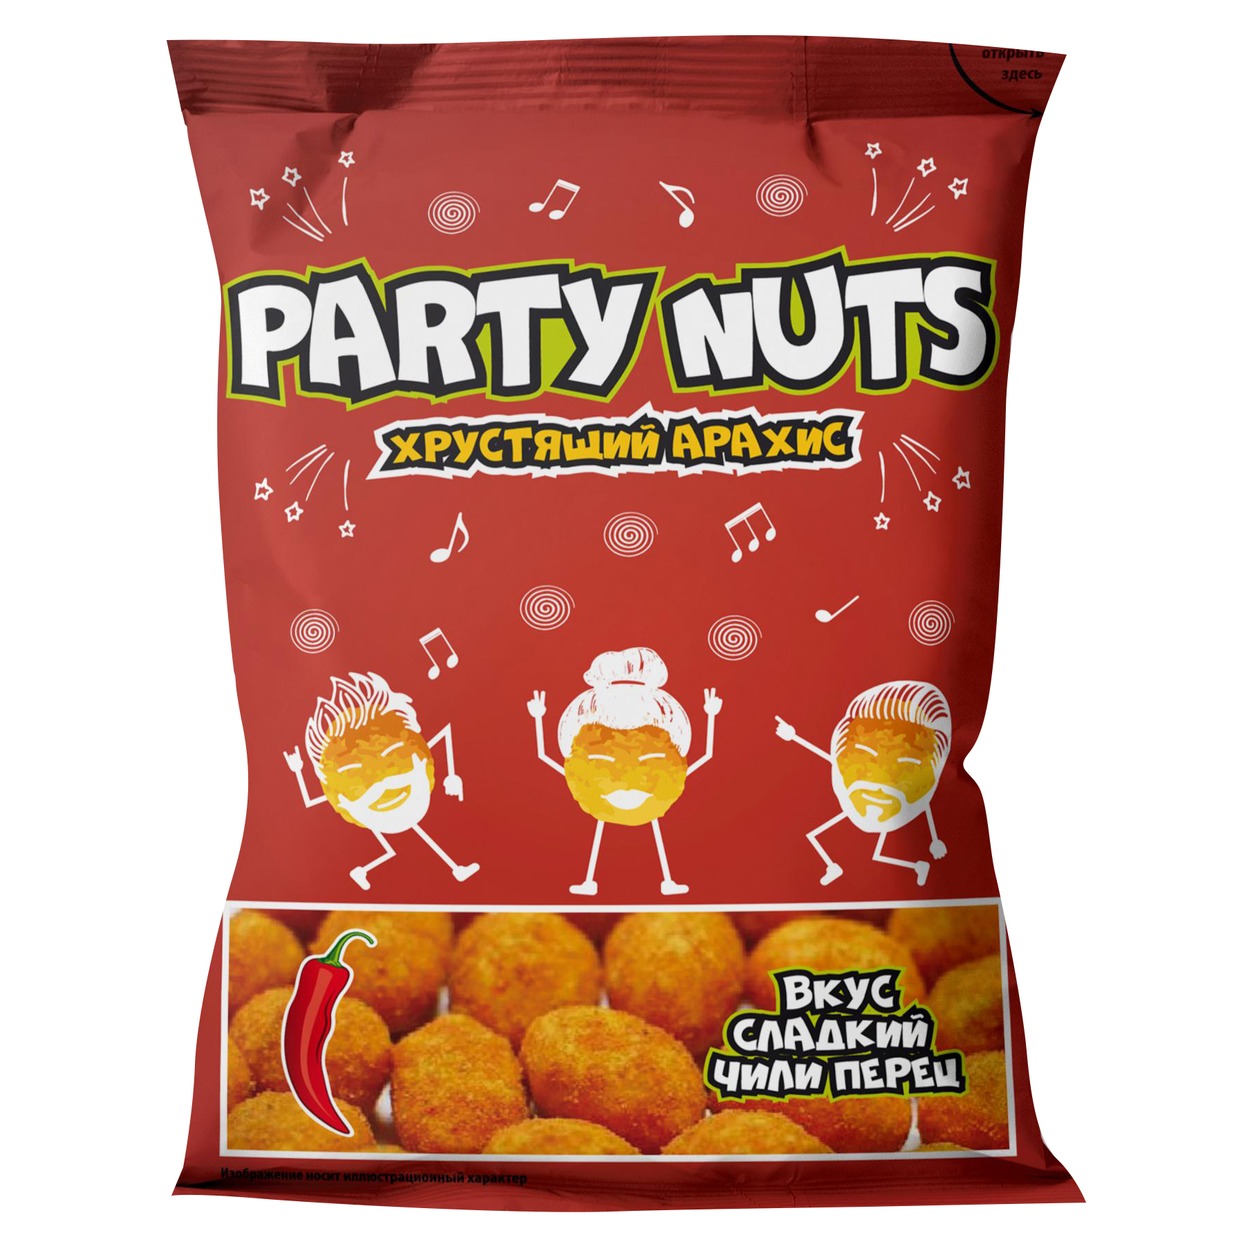 Хрустящий арахис со вкусом Сладкого Чили "PARTY NUTS", 100 г по акции в Пятерочке